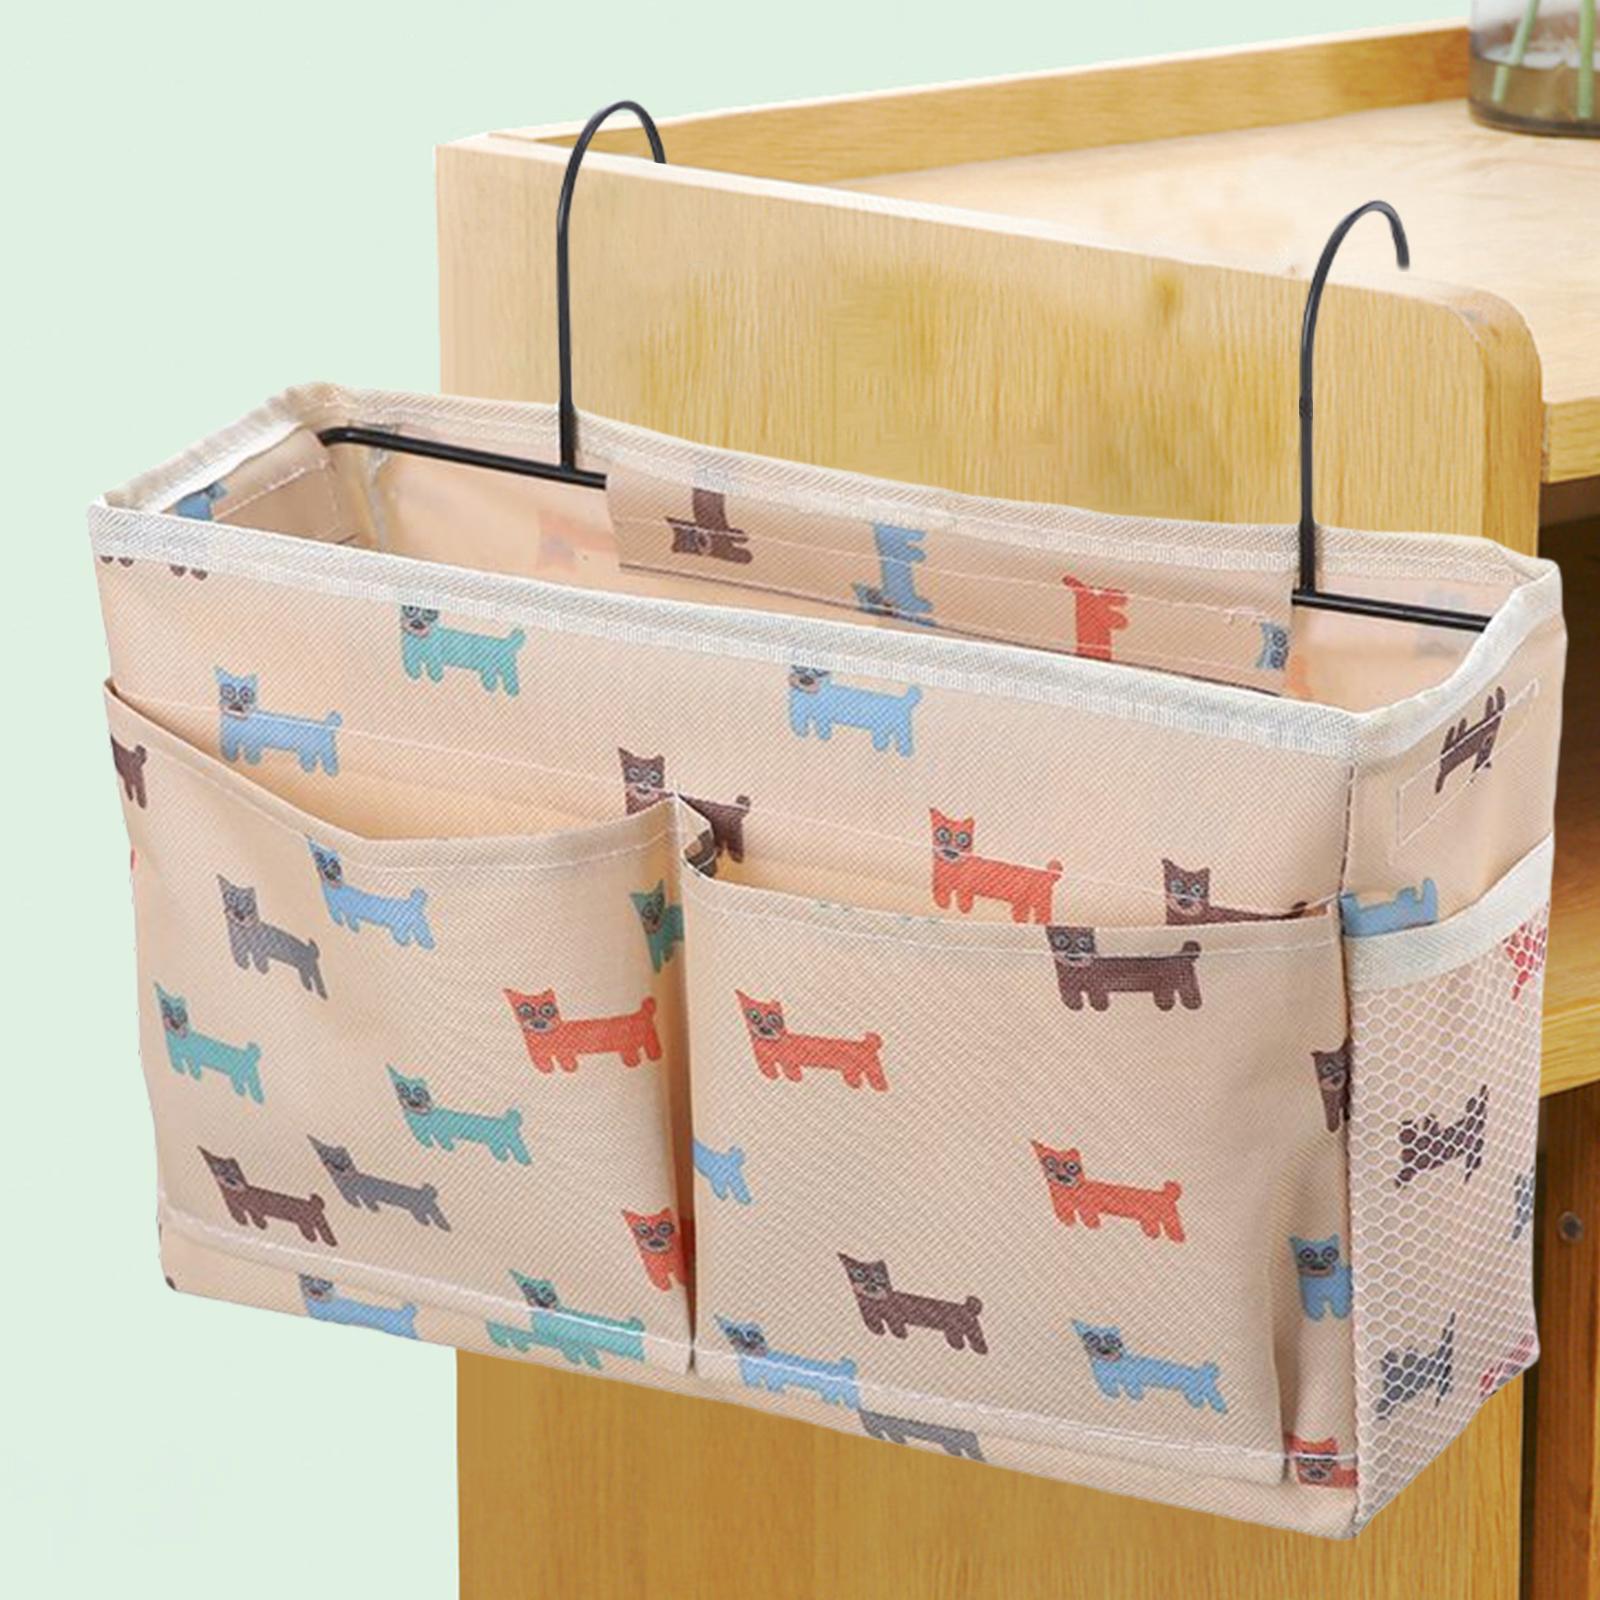 Bedside Caddy-Sundries Bag Hanging Bunk Bed Storage Organizer, Bedside Pocket Storage Bag for Mobile